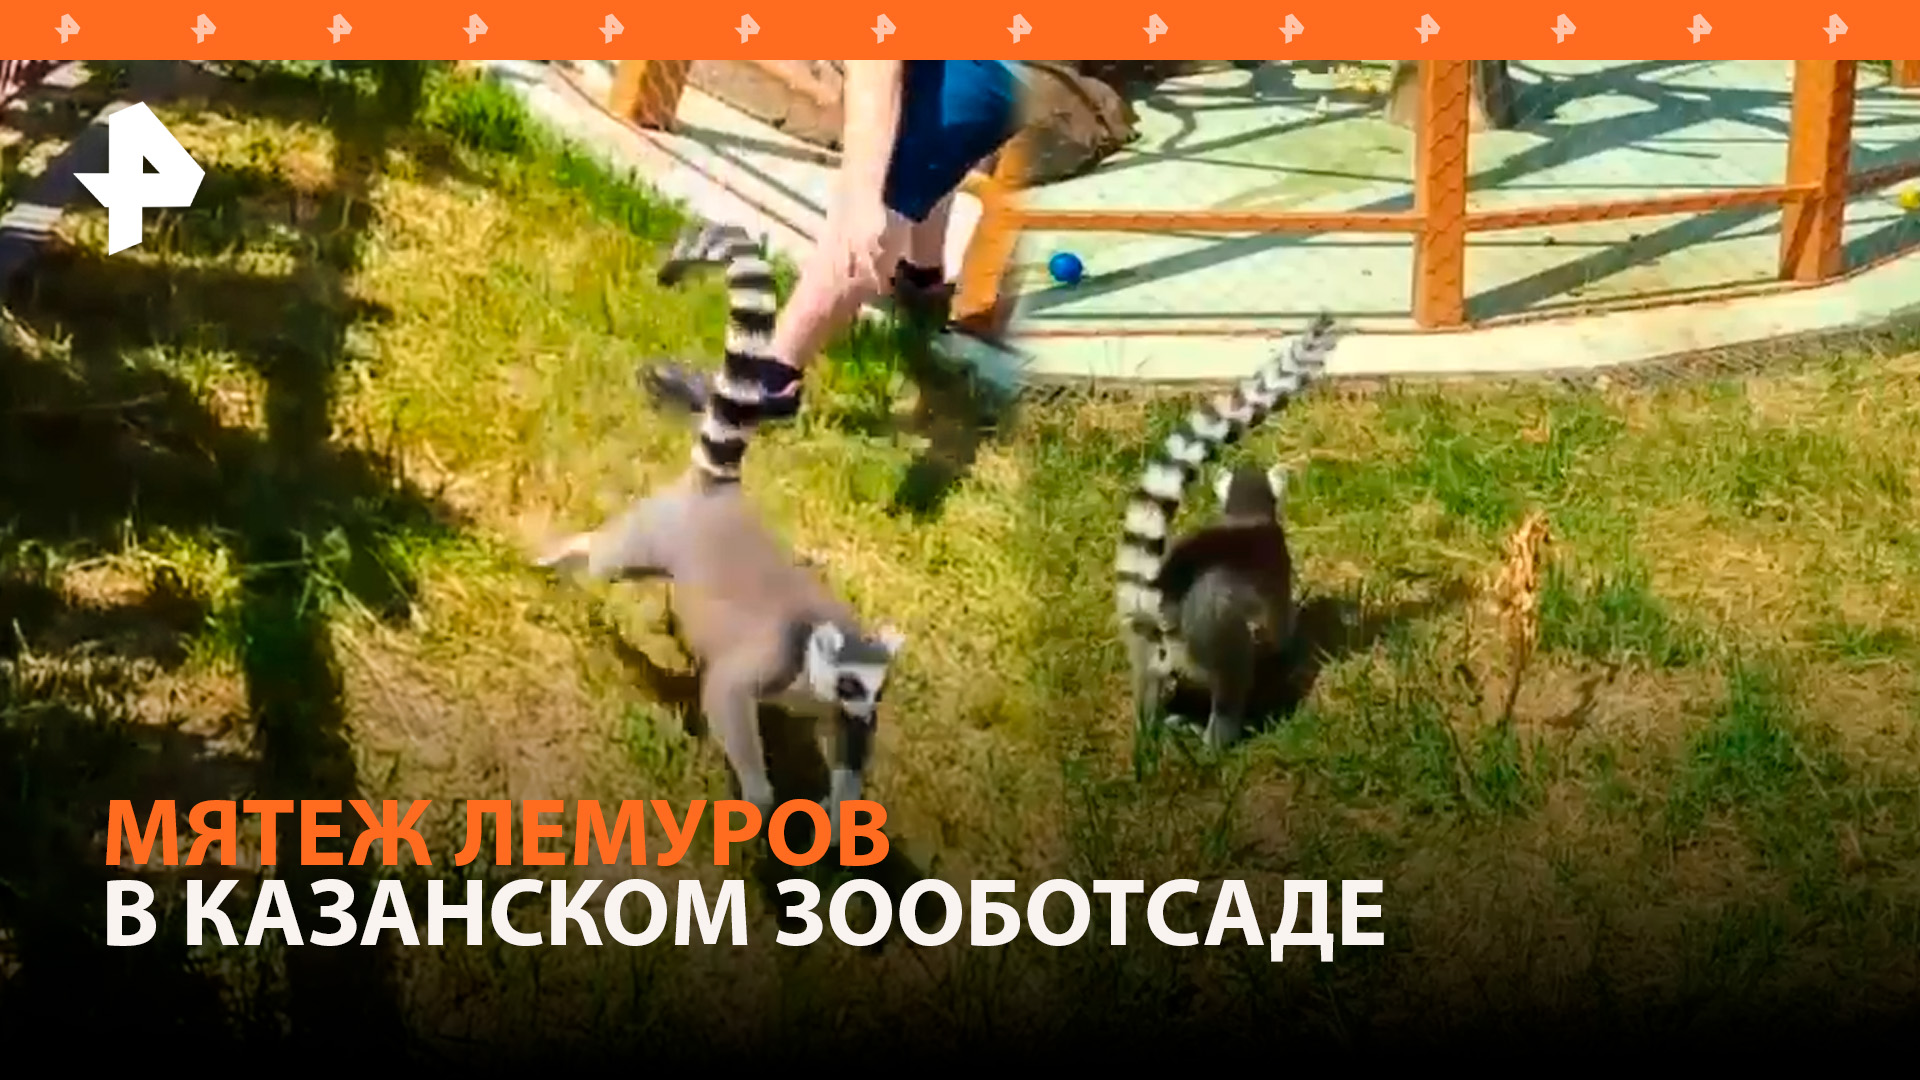 Восстание лемуров в Казанском зооботсаде: проказники сбежали из вольеров